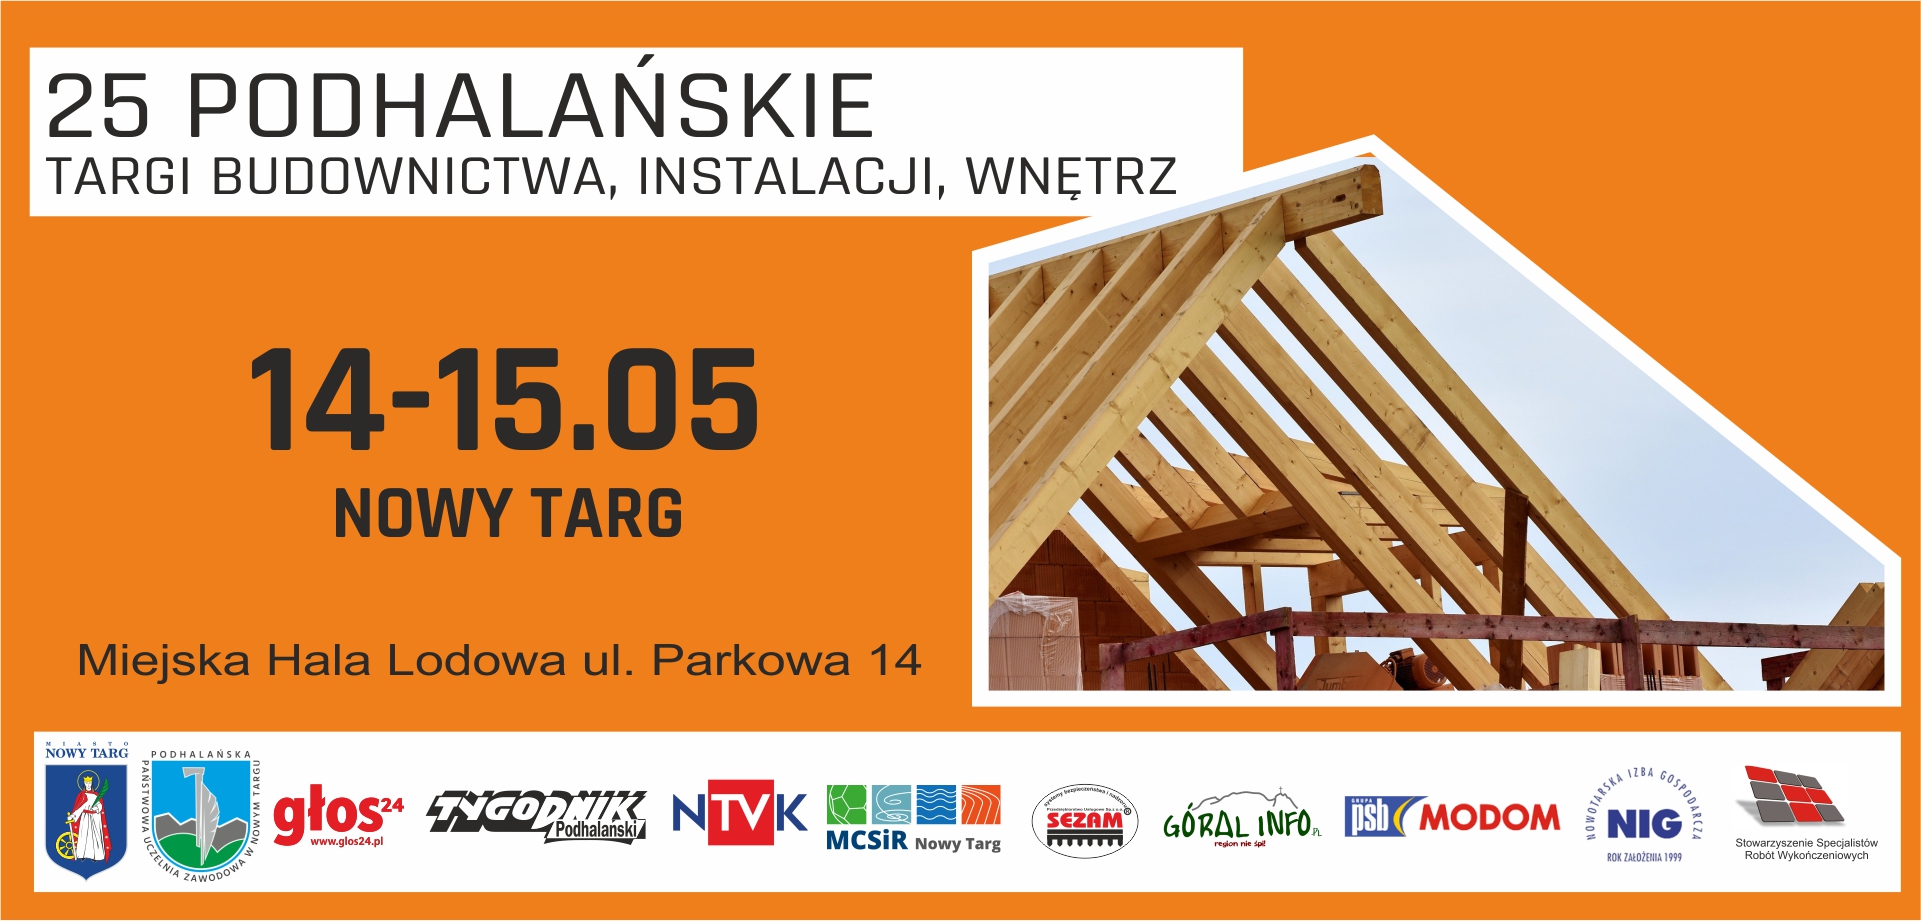 Podhalańskie Targi Budownictwa / Nowy Targ 14-15 maj 2022